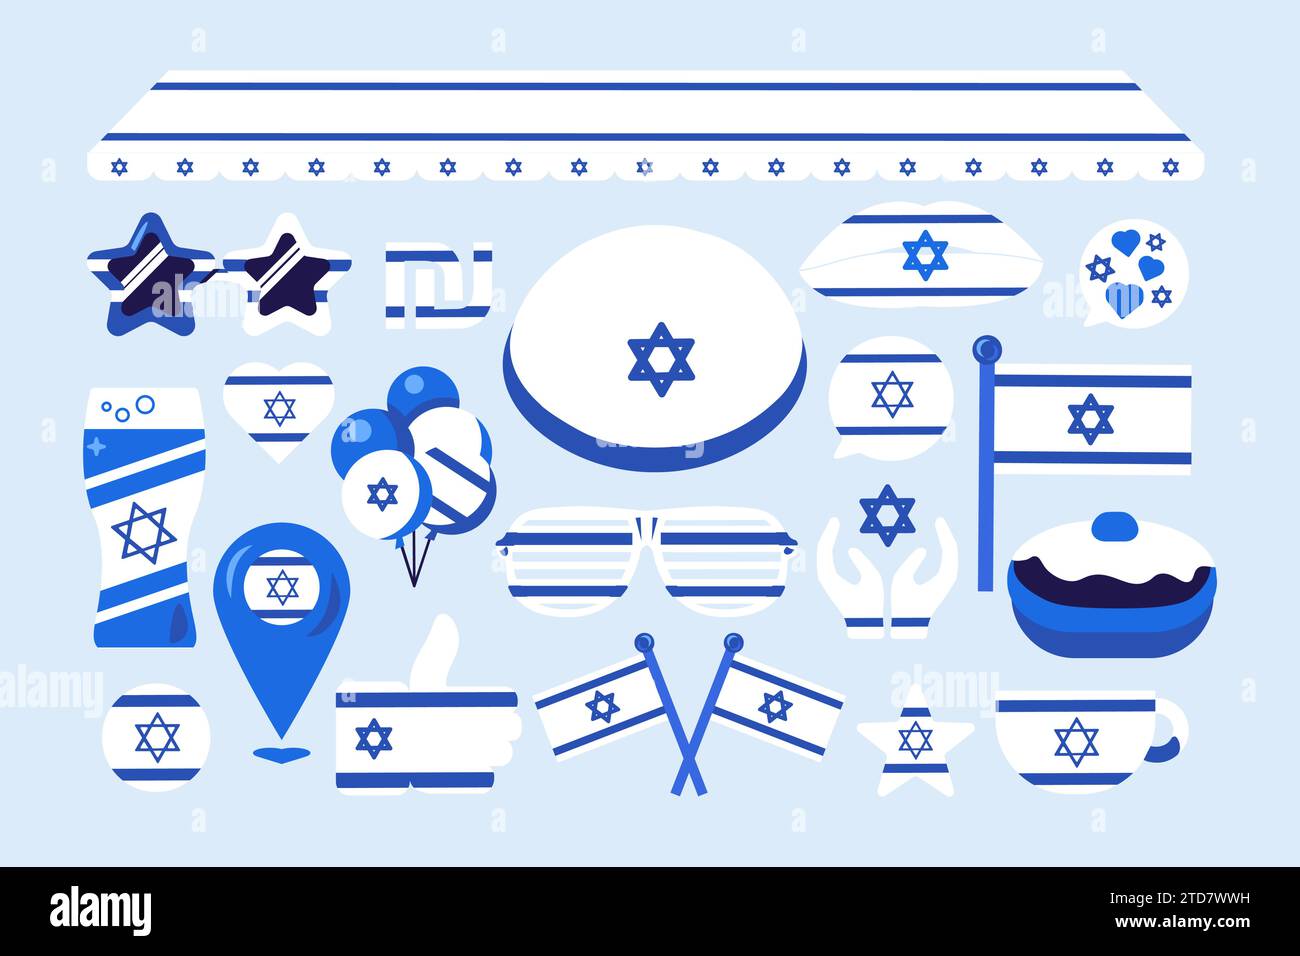 Sammlung von Israel festlichen Elementen, Attribute des Glaubenden Feiertags. Jüdische Flagge, Gebetsgeste, Sonnenbrille, David-Stern, Ballons, Getränk gl Stock Vektor